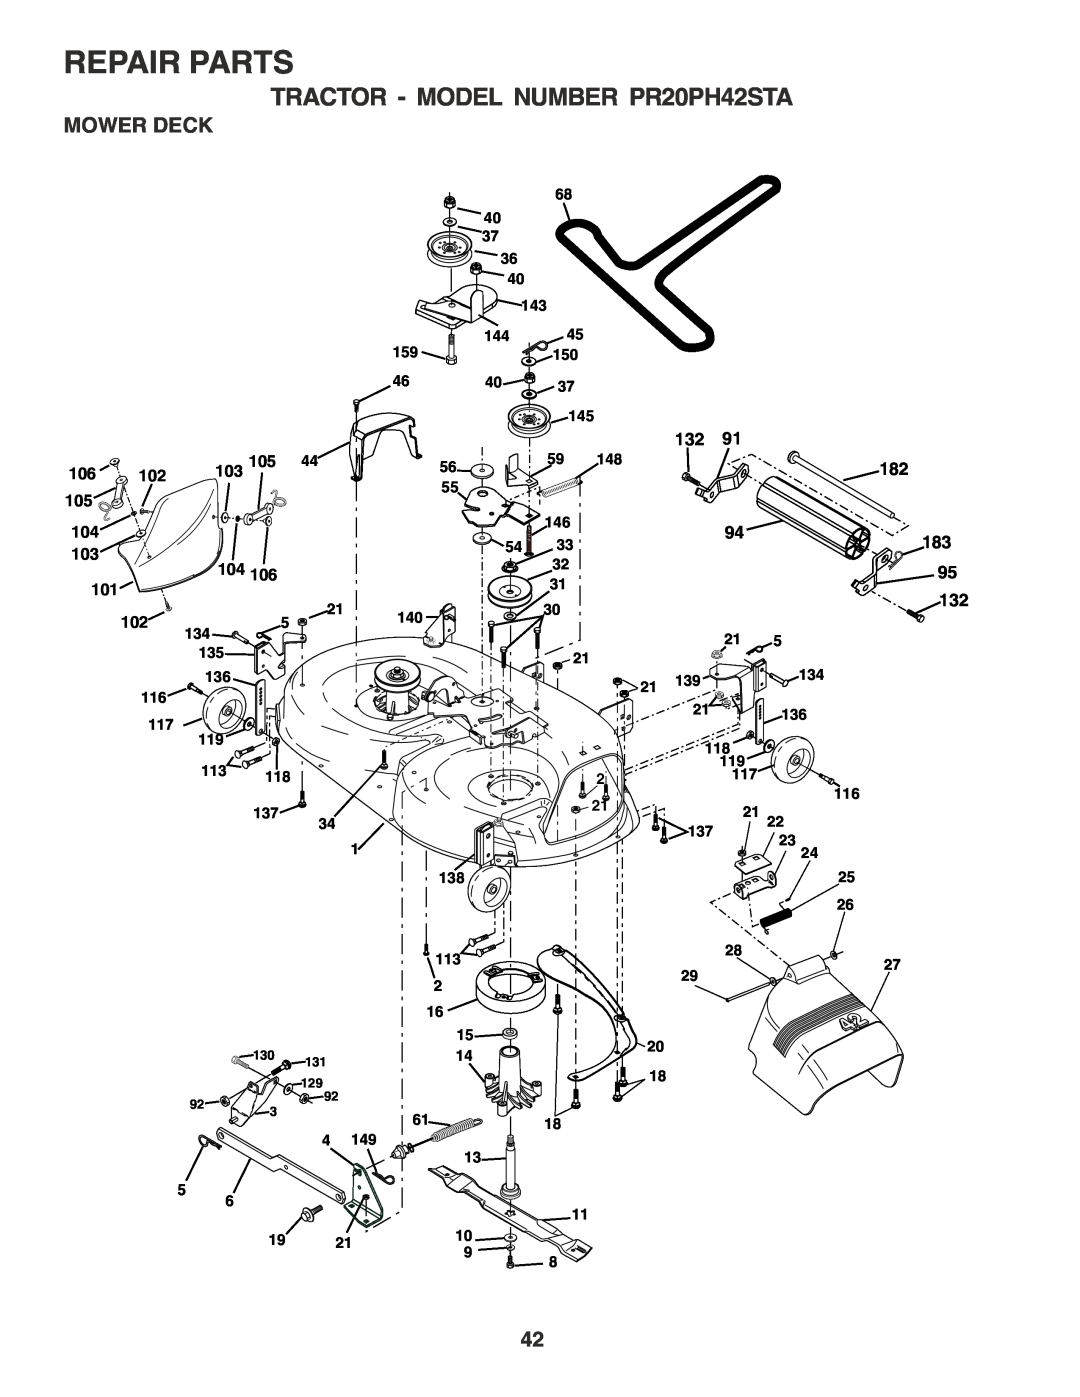 Poulan owner manual Mower Deck, Repair Parts, TRACTOR - MODEL NUMBER PR20PH42STA, 139134, 119 